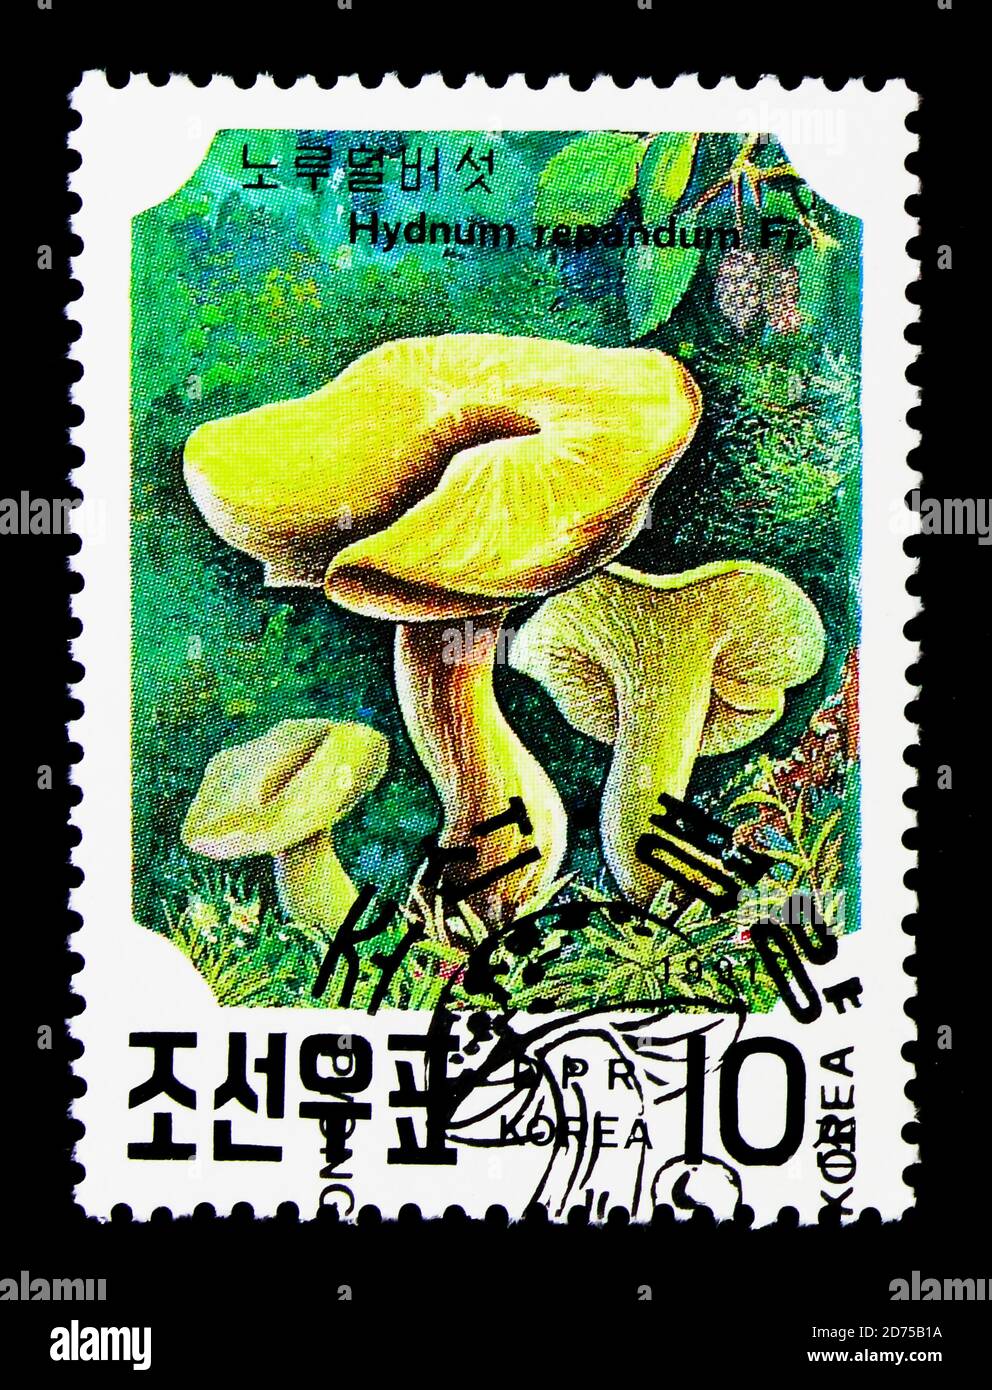 MOSCOU, RUSSIE - 25 NOVEMBRE 2017 : un timbre imprimé en république populaire démocratique de Corée montre Hydnum repandum, champignons de la série, vers 1991 Banque D'Images